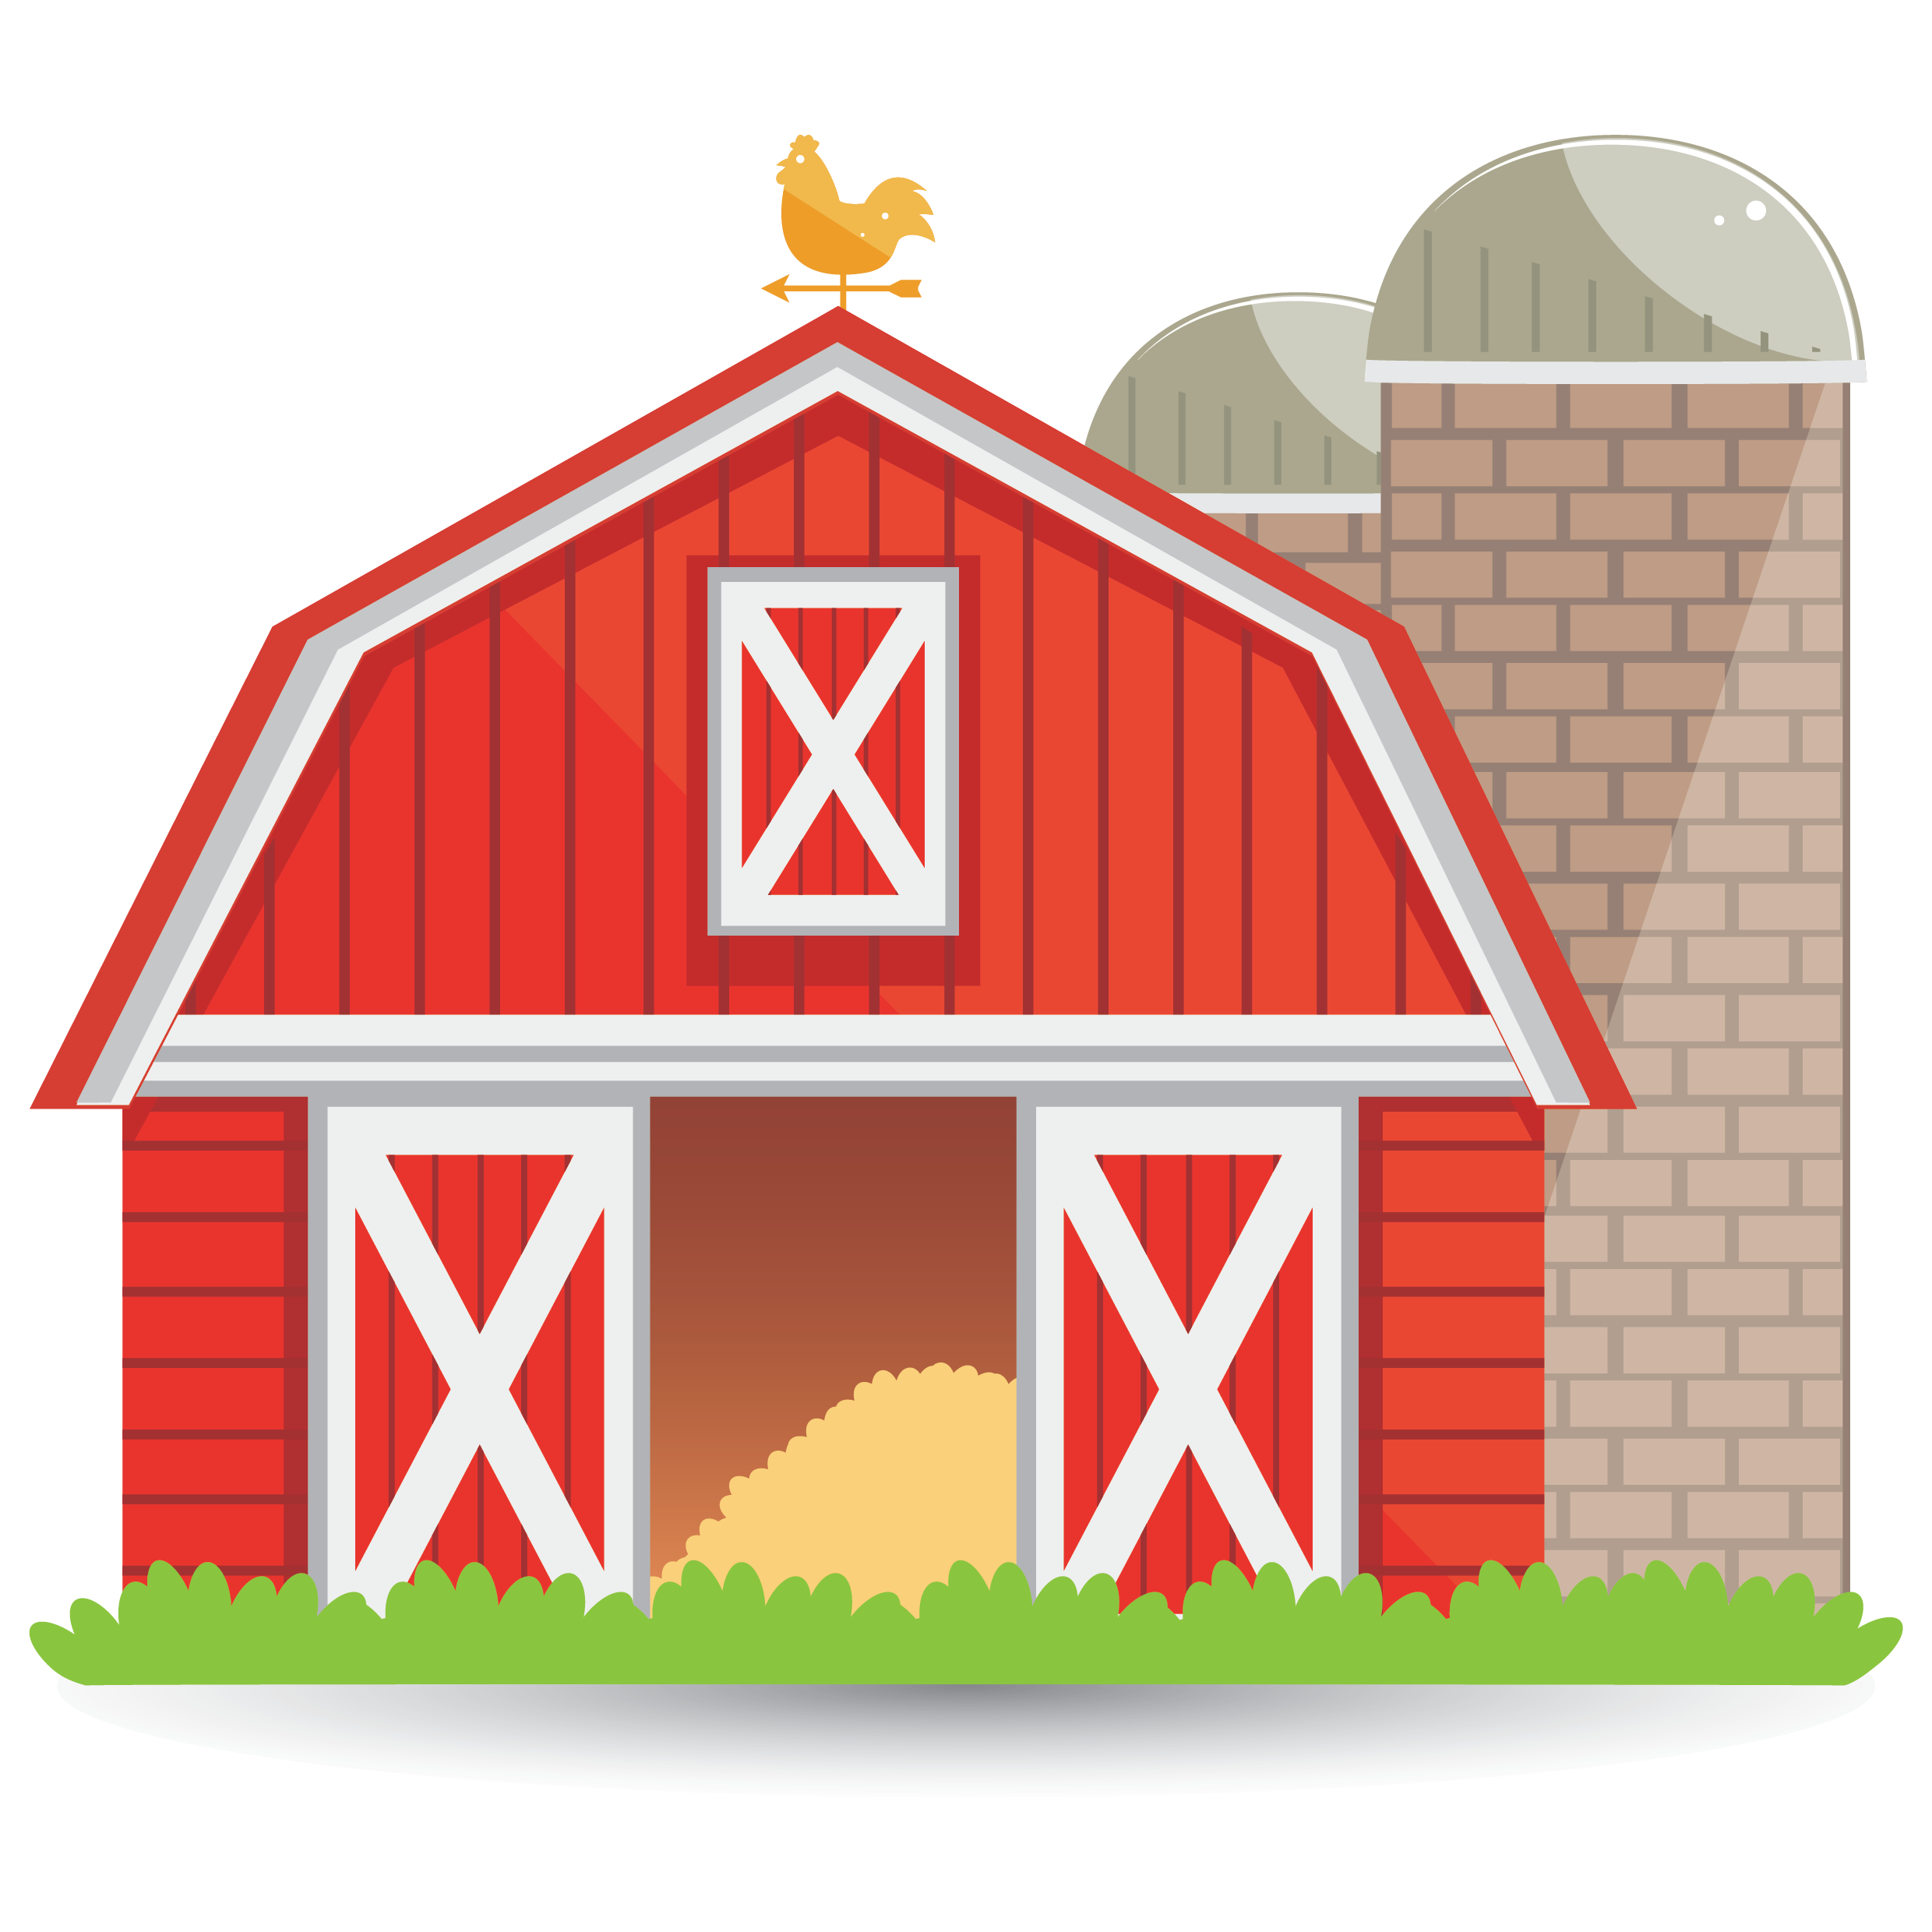 Farm farm house